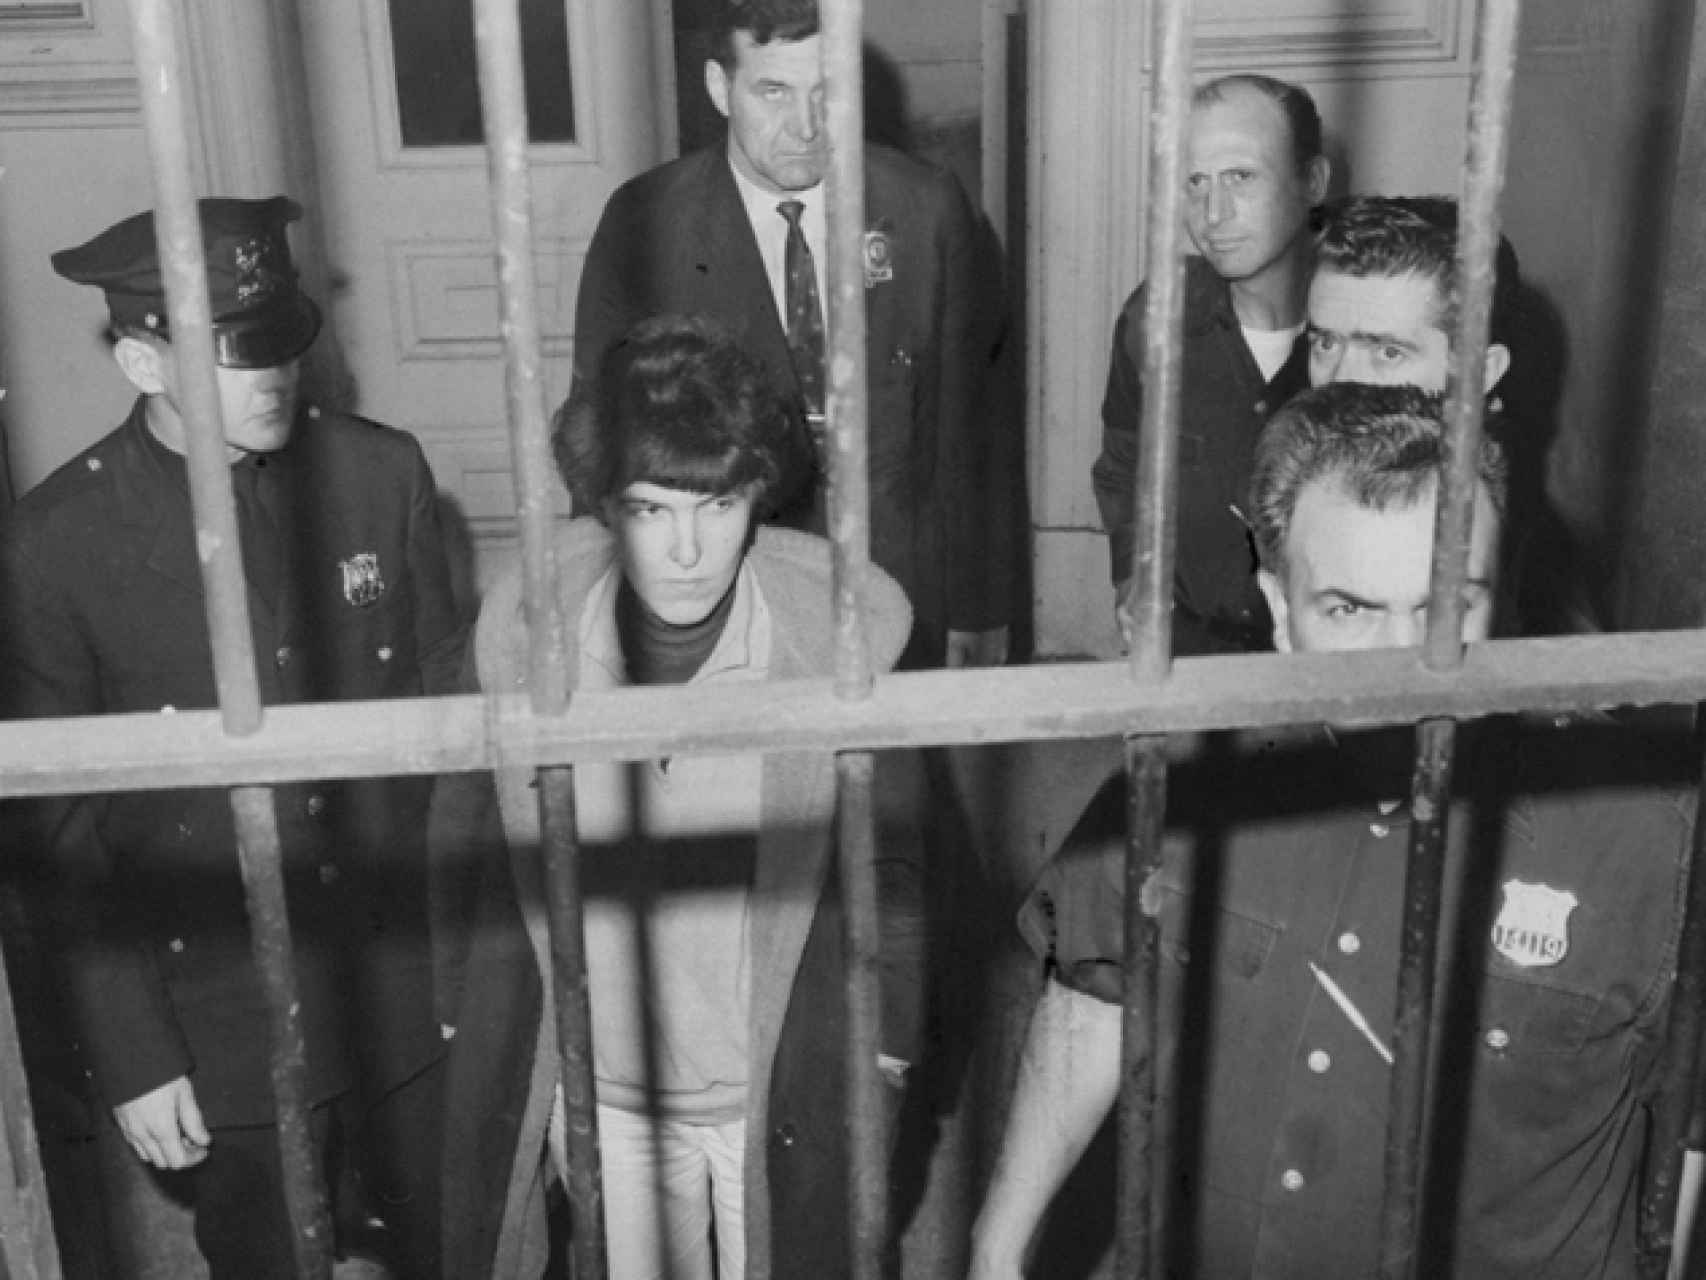 La escritora Valerie Solanas arrestada tras el intento de asesinato de Warhol.